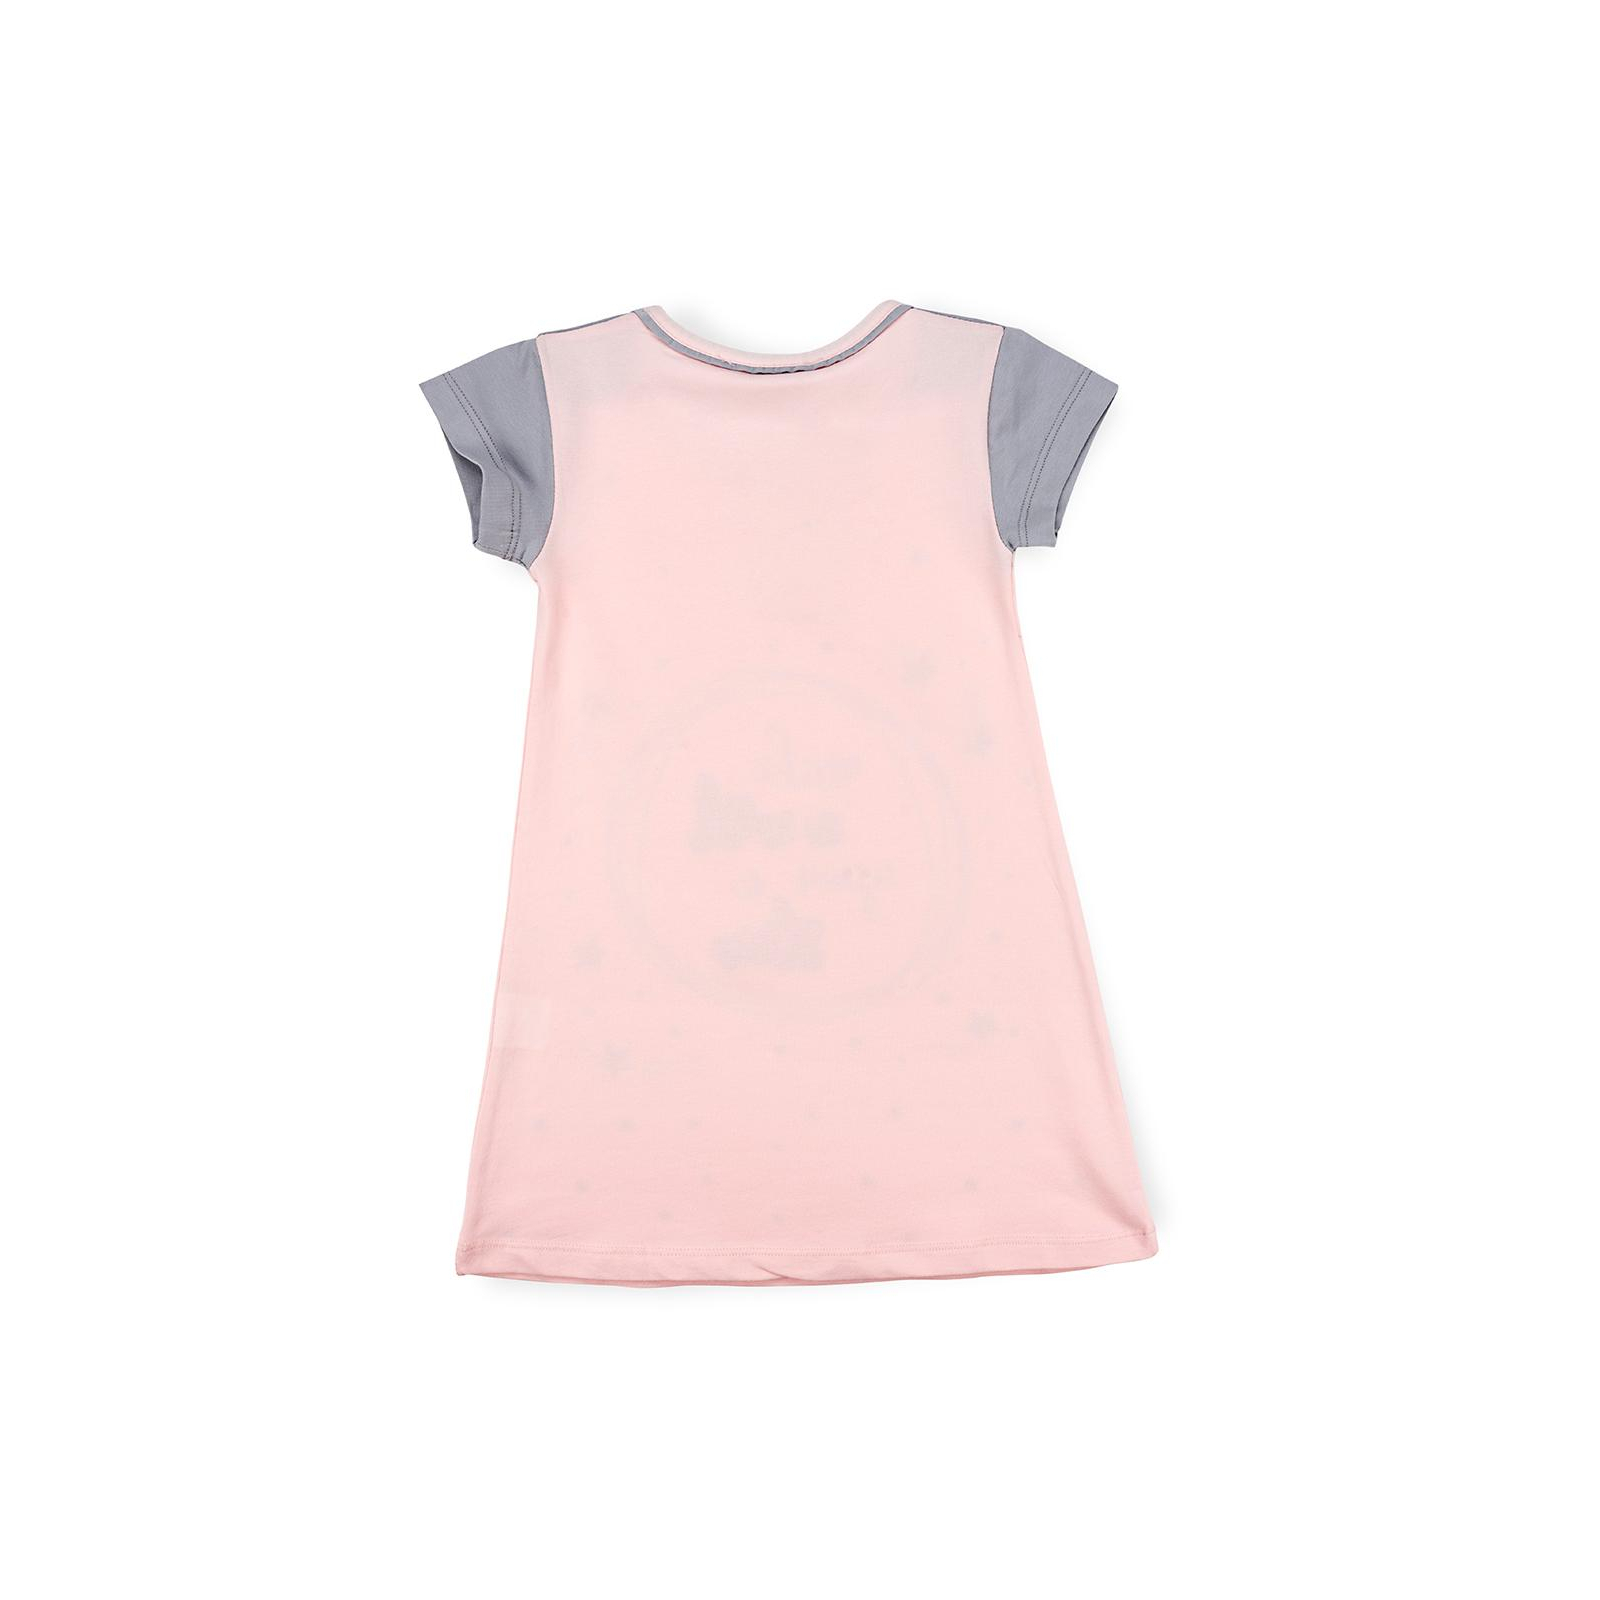 Піжама Matilda сорочка Із зірочкамі (7992-2-110G-pink) зображення 2